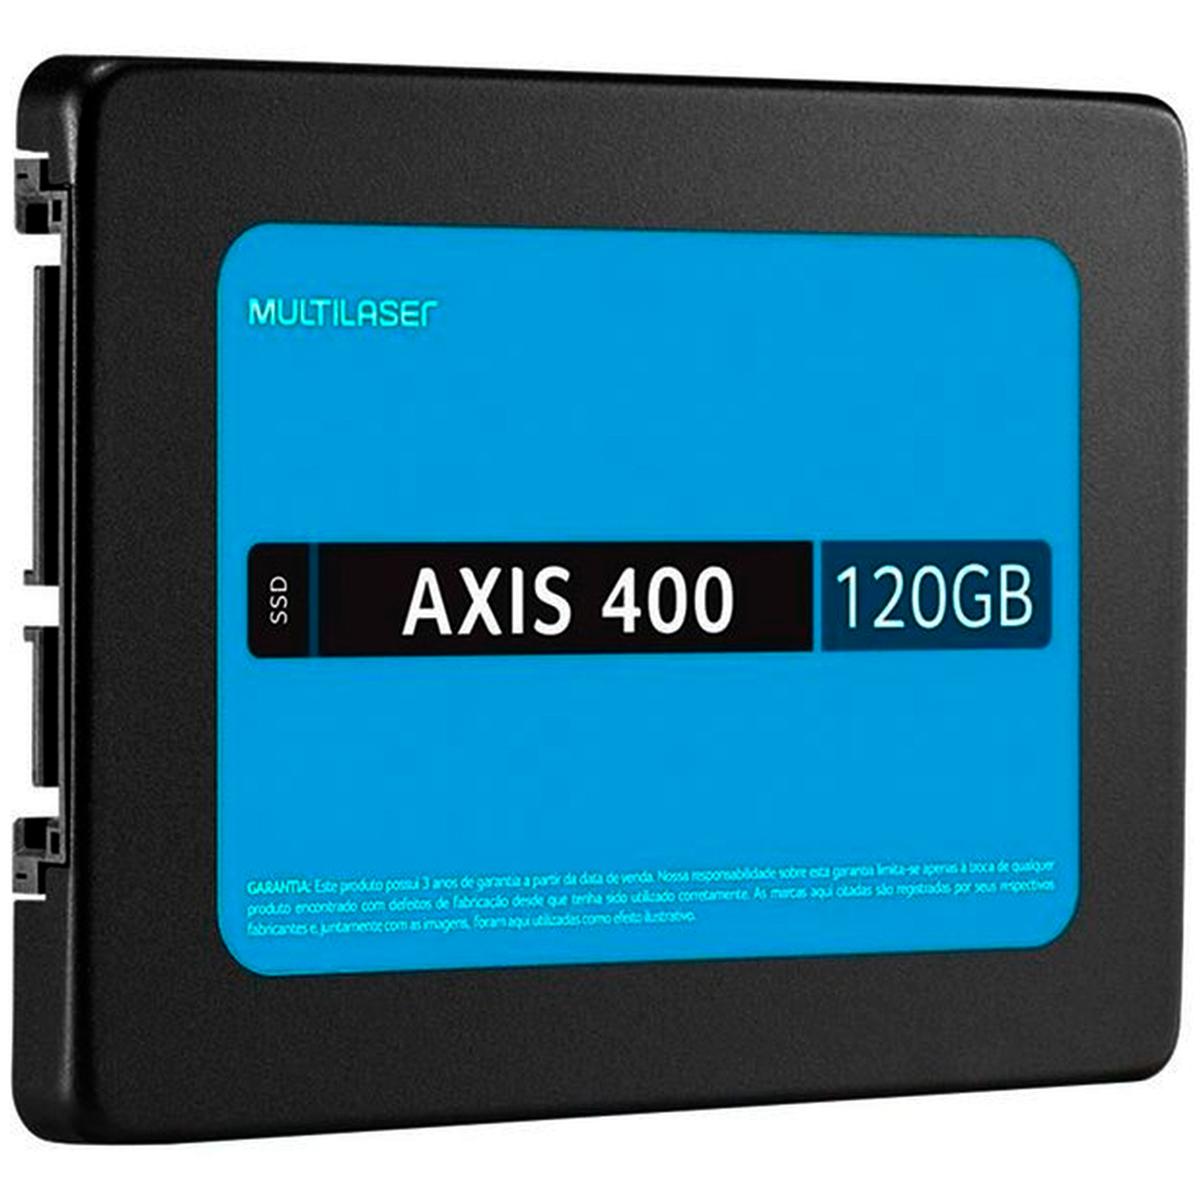 SSD 120GB Multilaser Axis 400 / 500 - SATA - Leitura 530 MB/s - Gravação 400 MB/s - STT120L - OEM